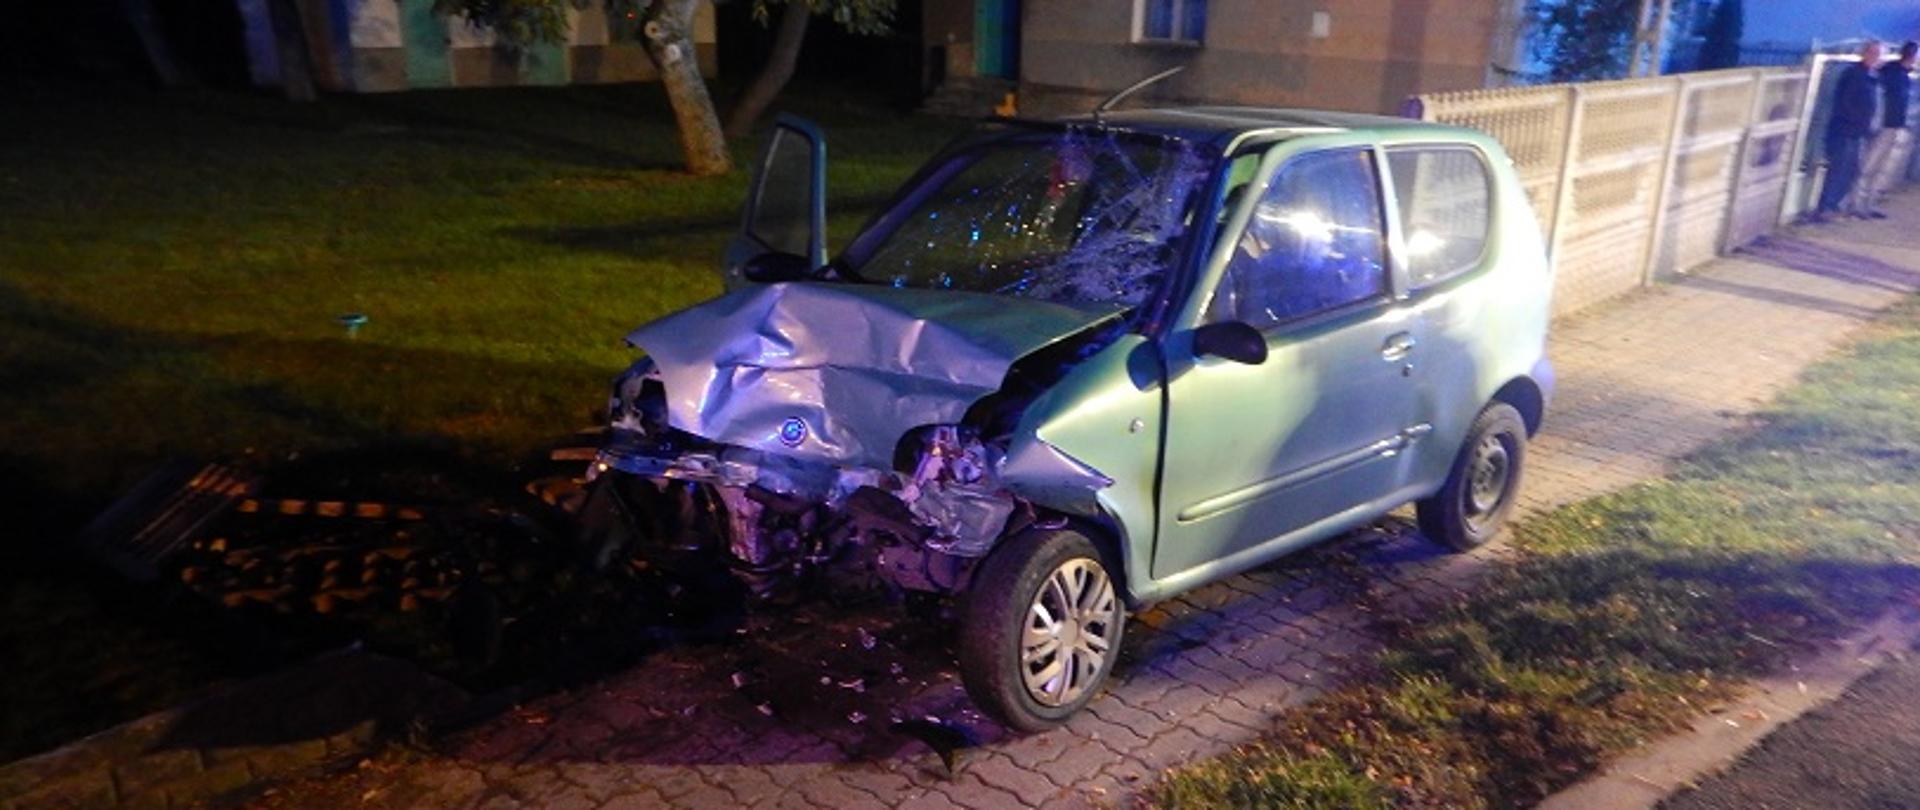 Zdjęcie przedstawia uszkodzony z przodu samochód osobowy marki Seicento po zderzeniu z samochodem osobowym marki Audi A6.